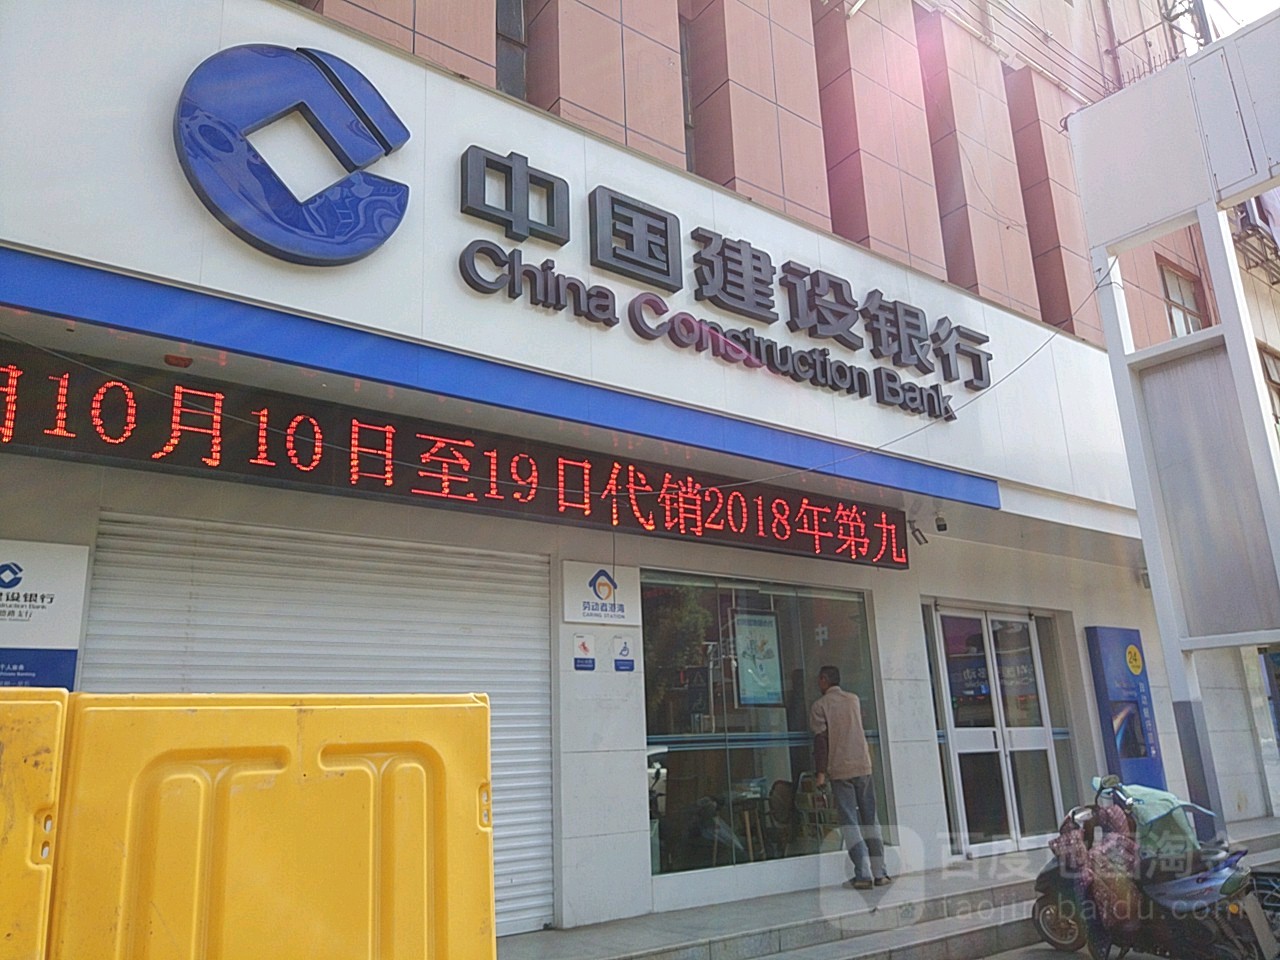 中国建设银行24小时自助银行服务(南京文德路支行)